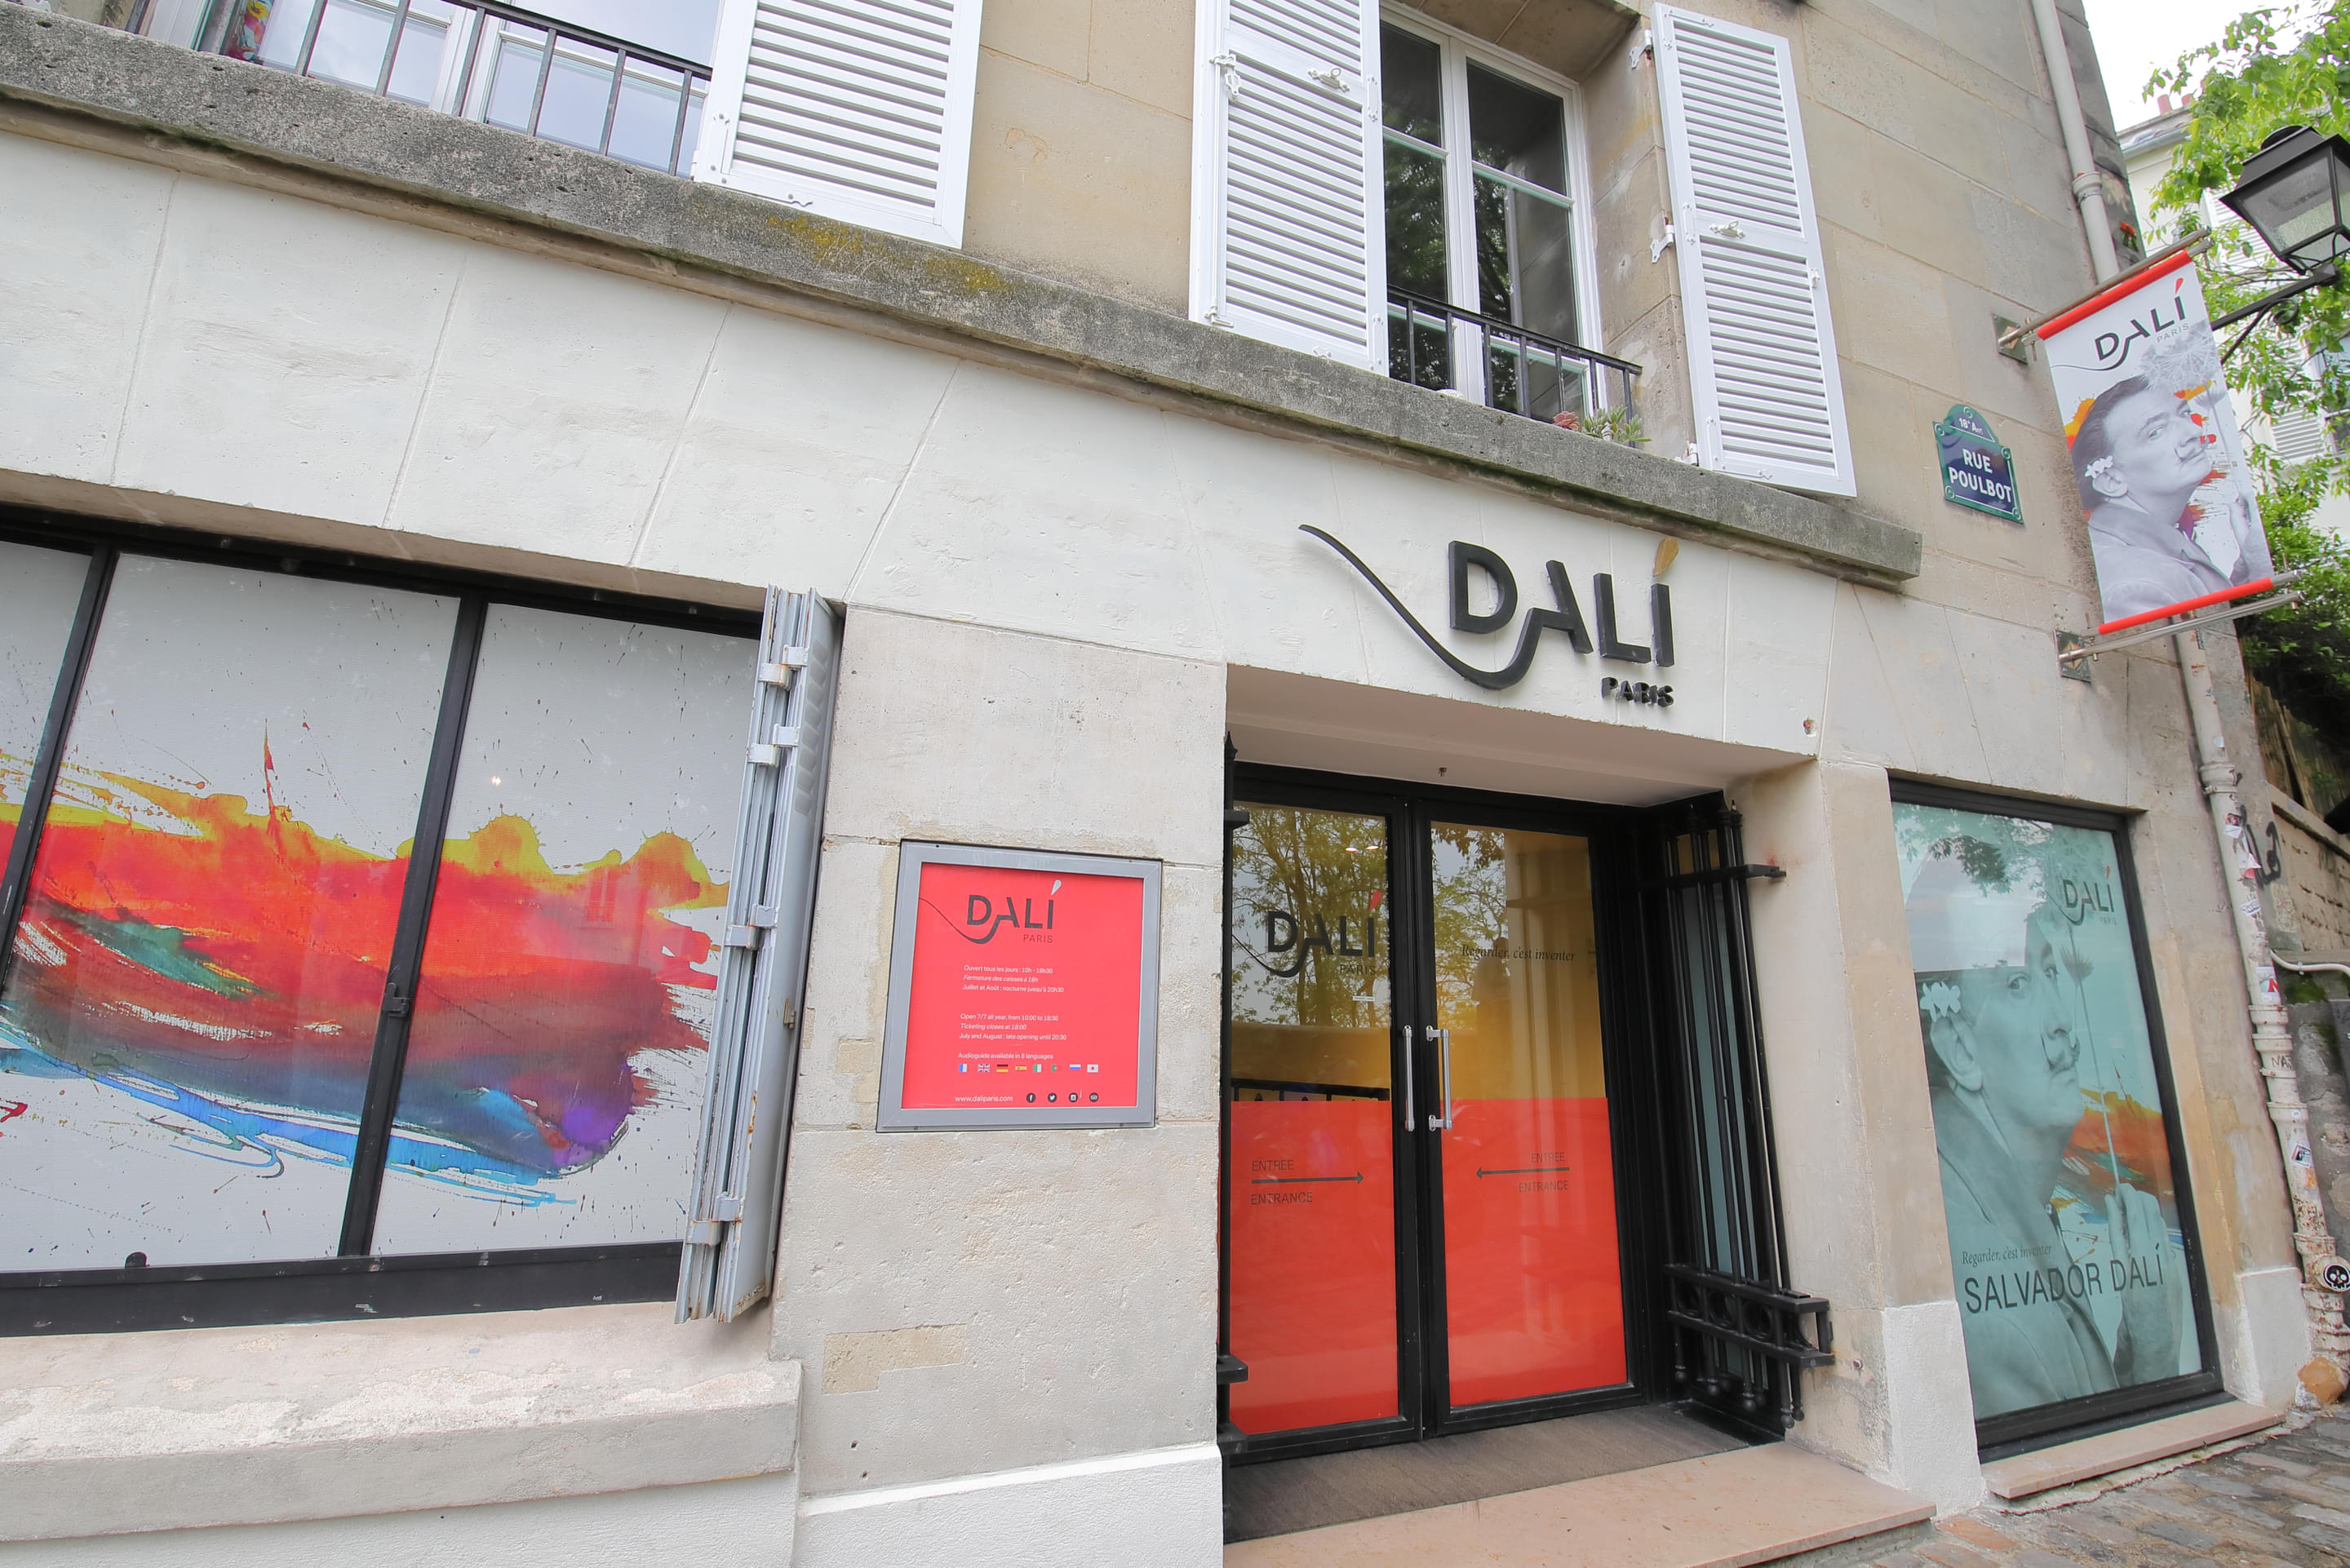 Dali Paris Overview